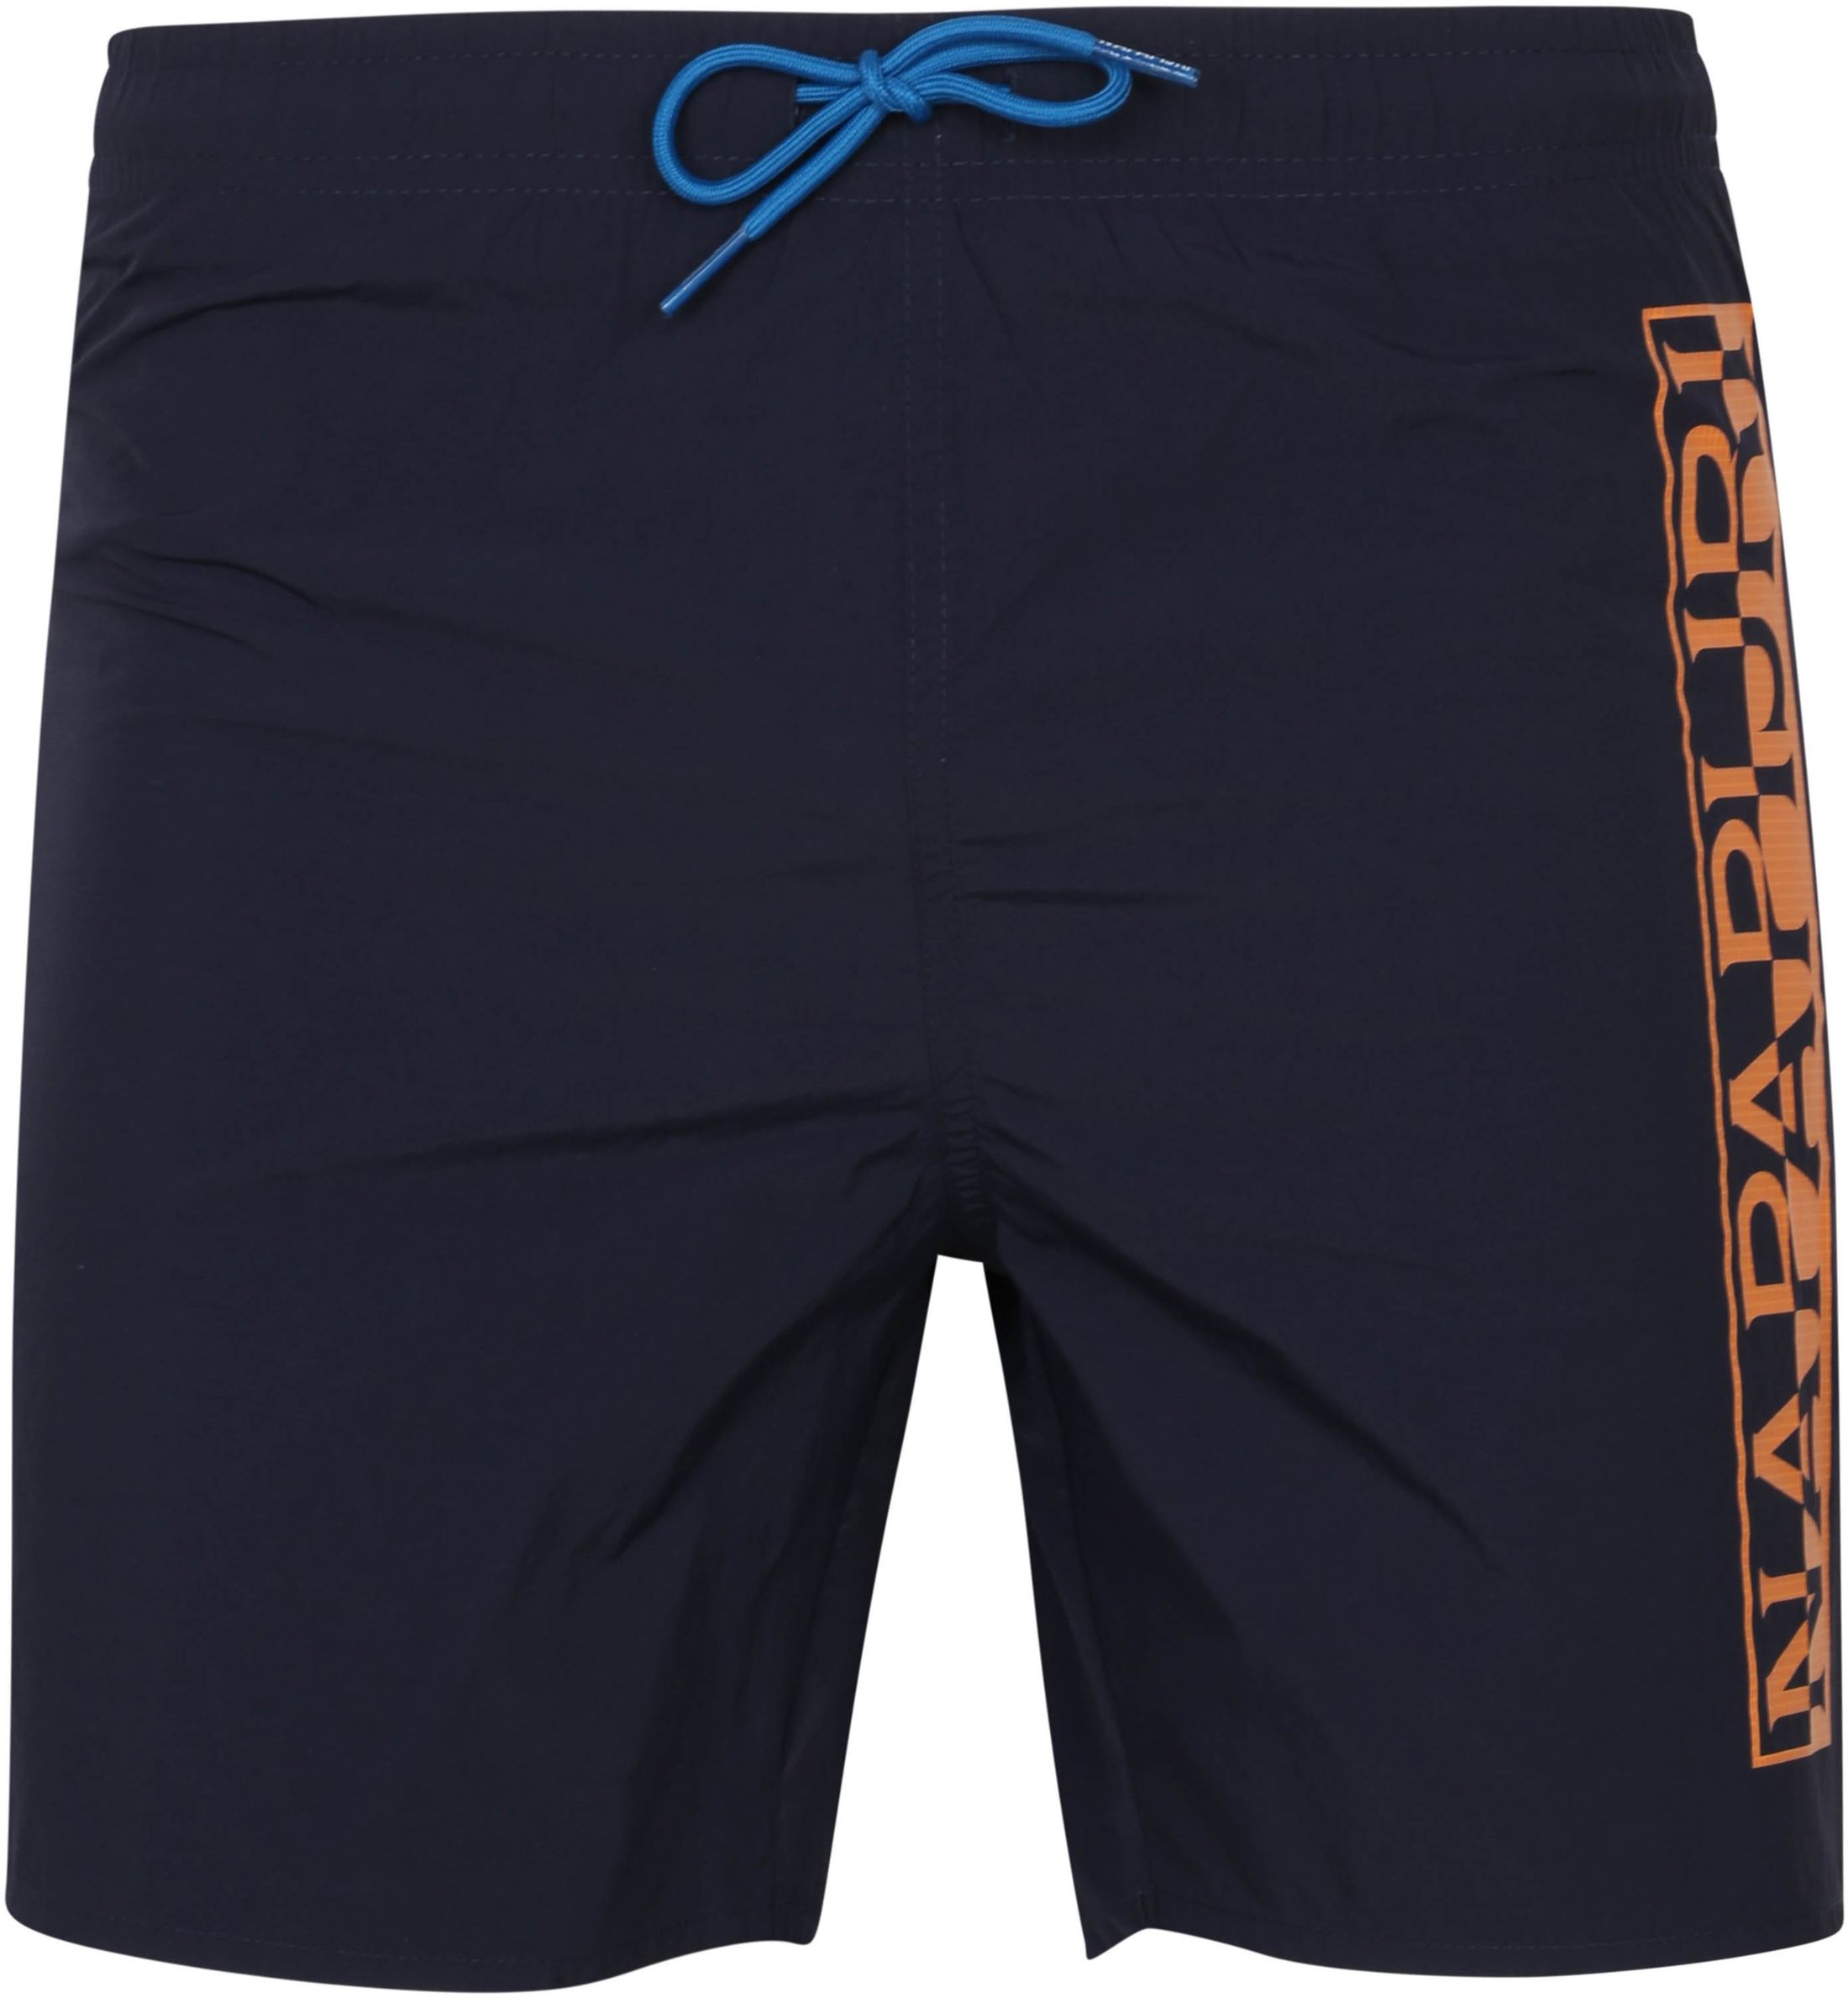 Napapijri Swimshorts Victor 1 Navy Blue Dark Blue size L